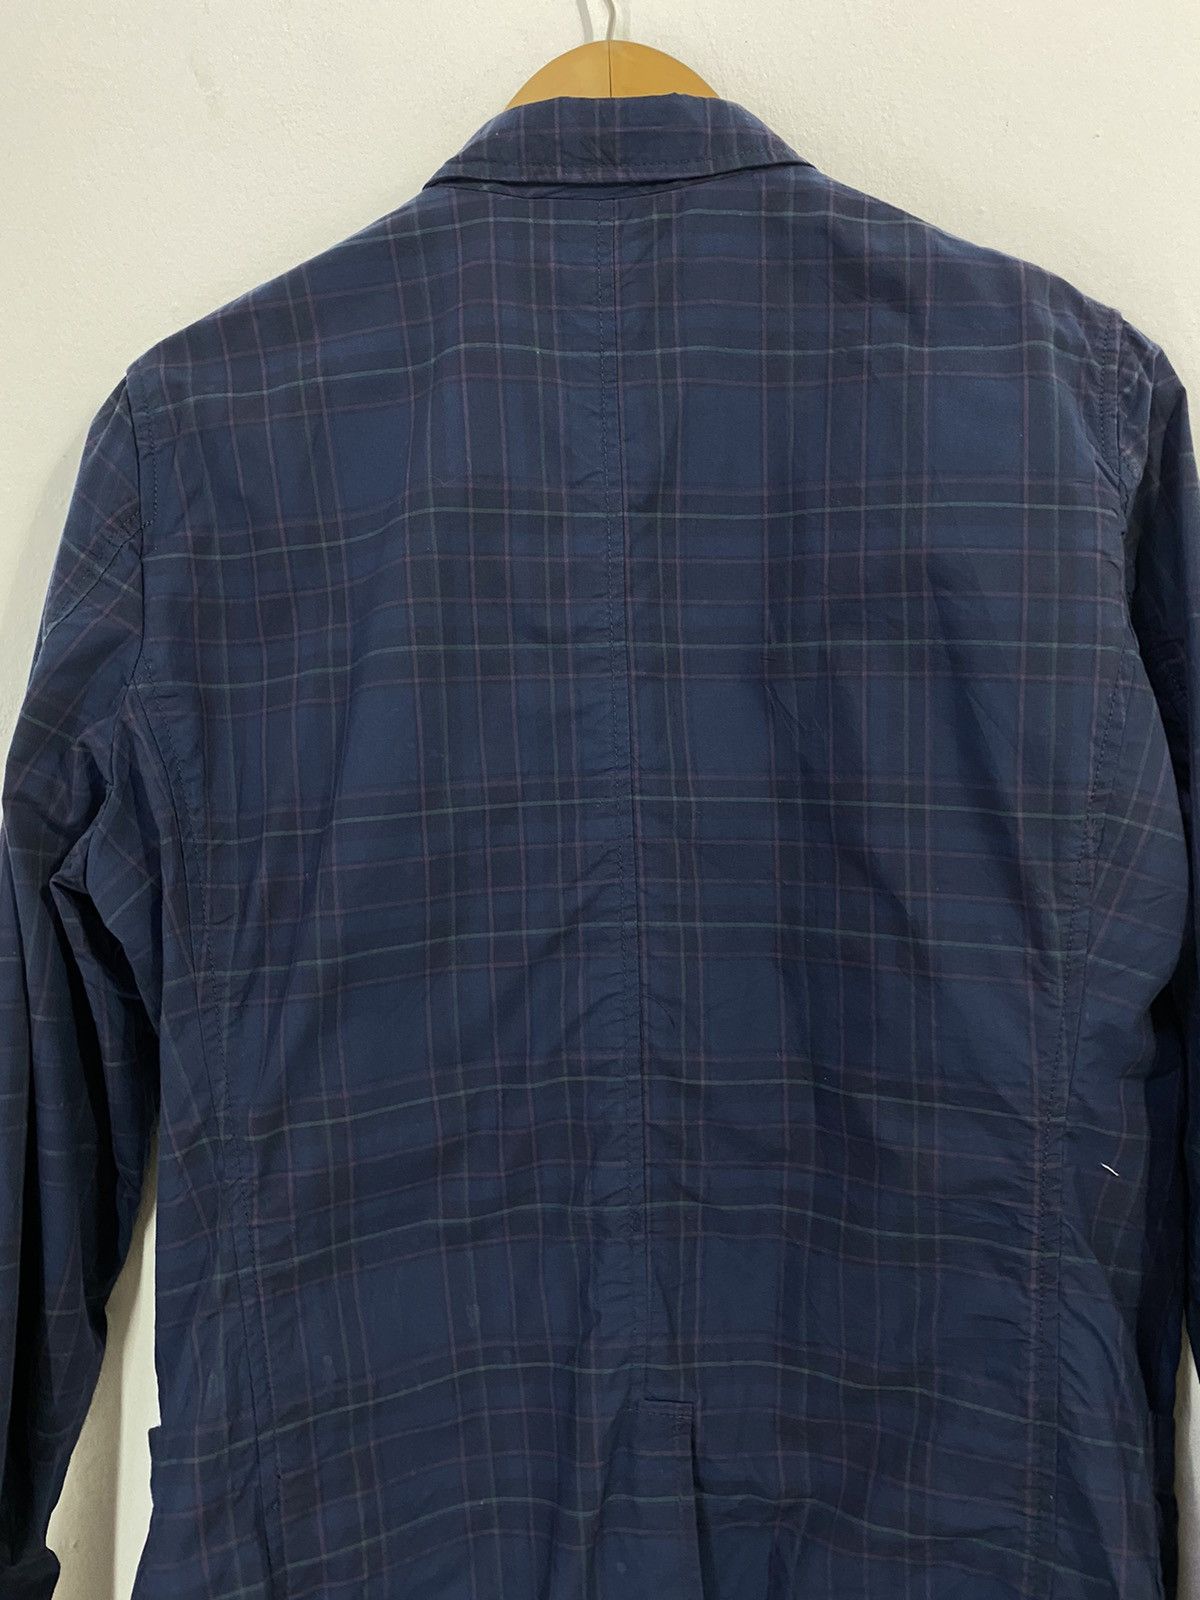 Beams+ Tartan Jacket Original Fabric Nice Design - 7